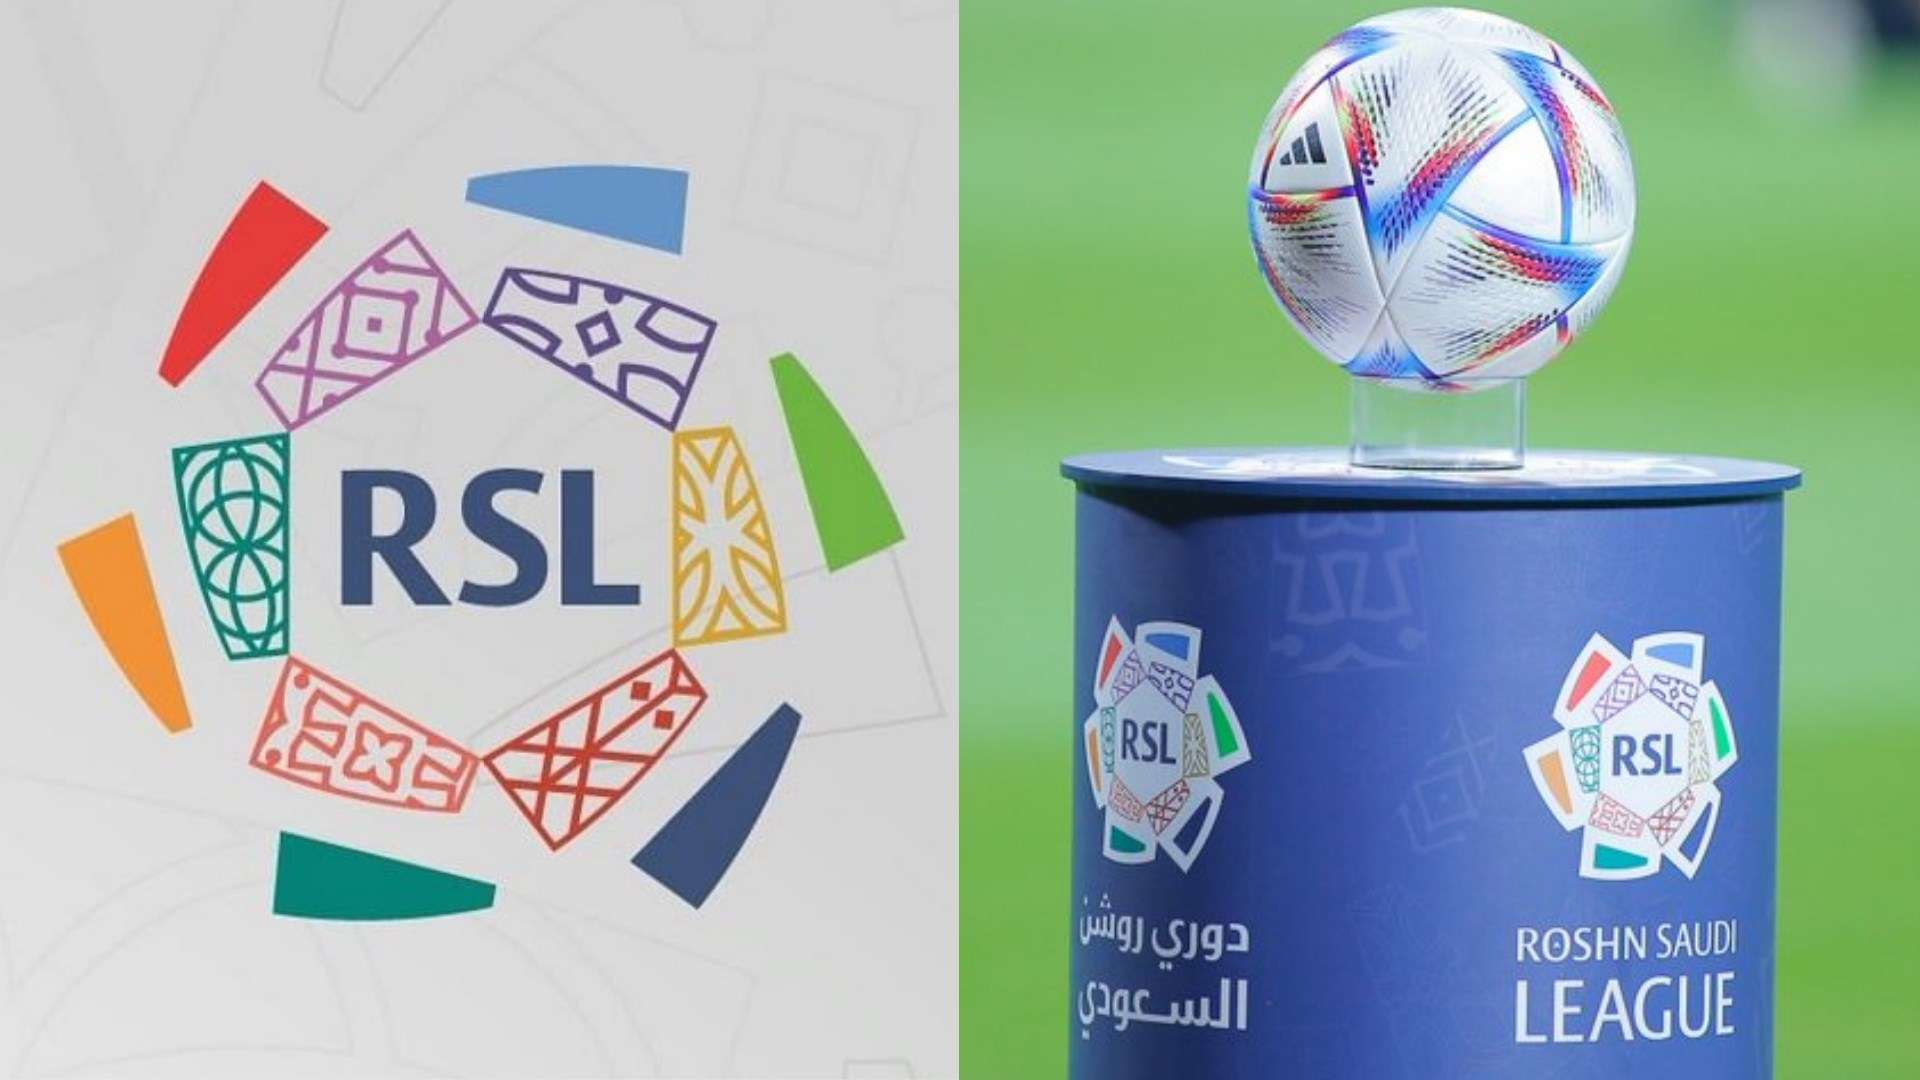 Roshn Saudi League (RSL)